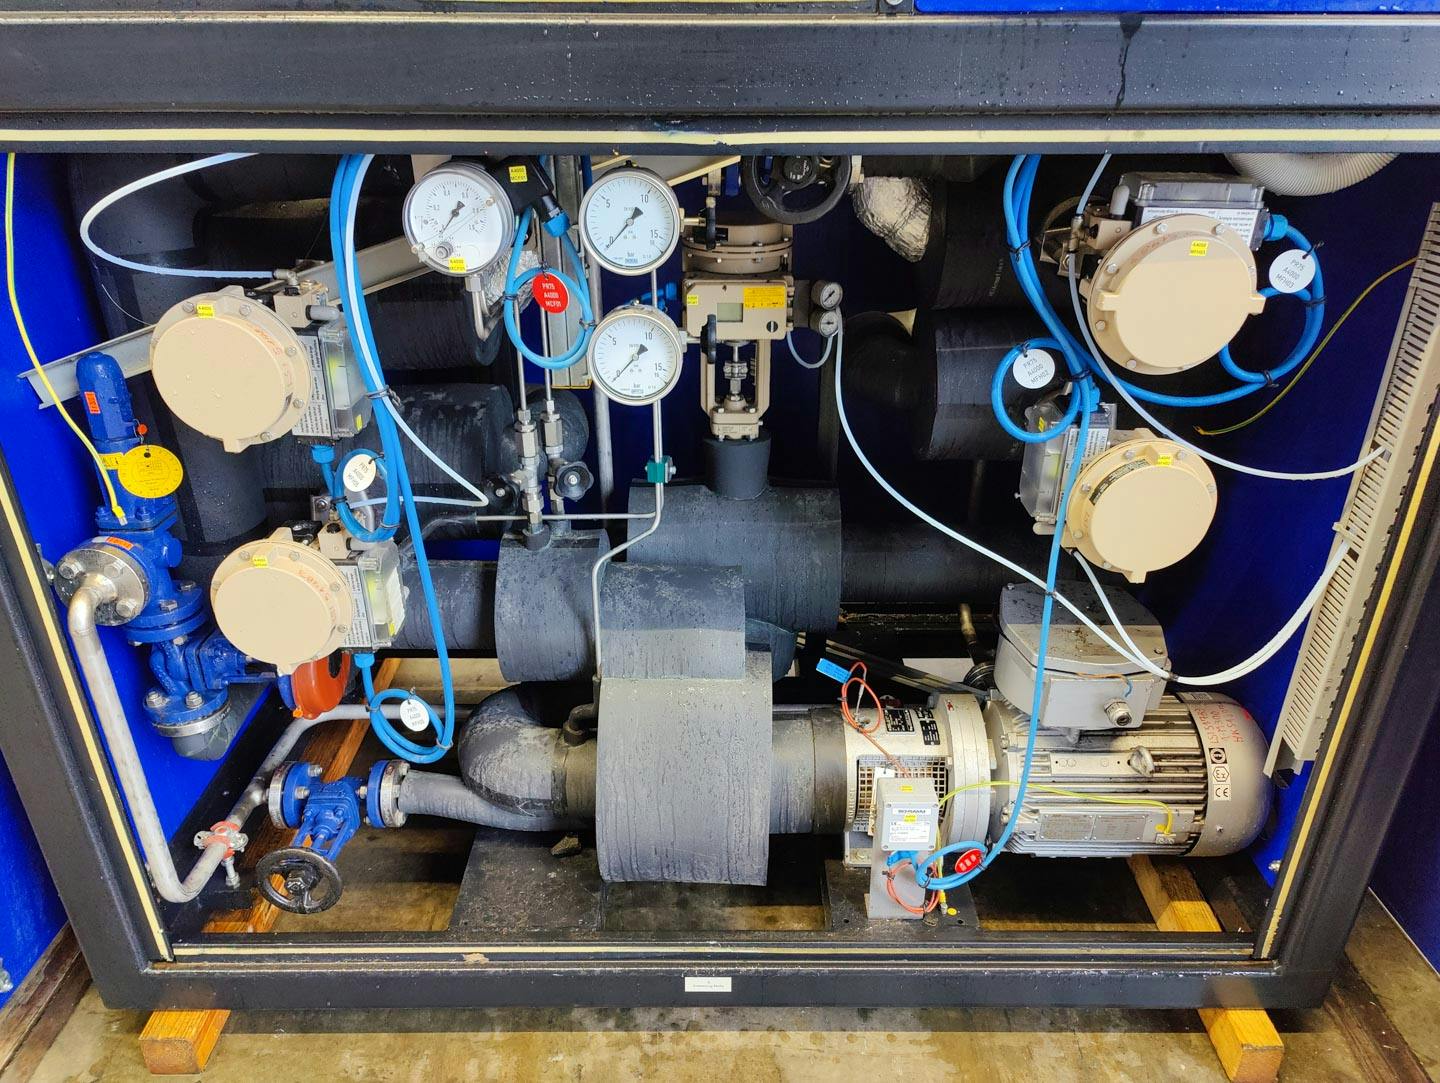 Lauda TR400 HK/KT-EX "secondary circuit system" - Temperature control unit - image 6